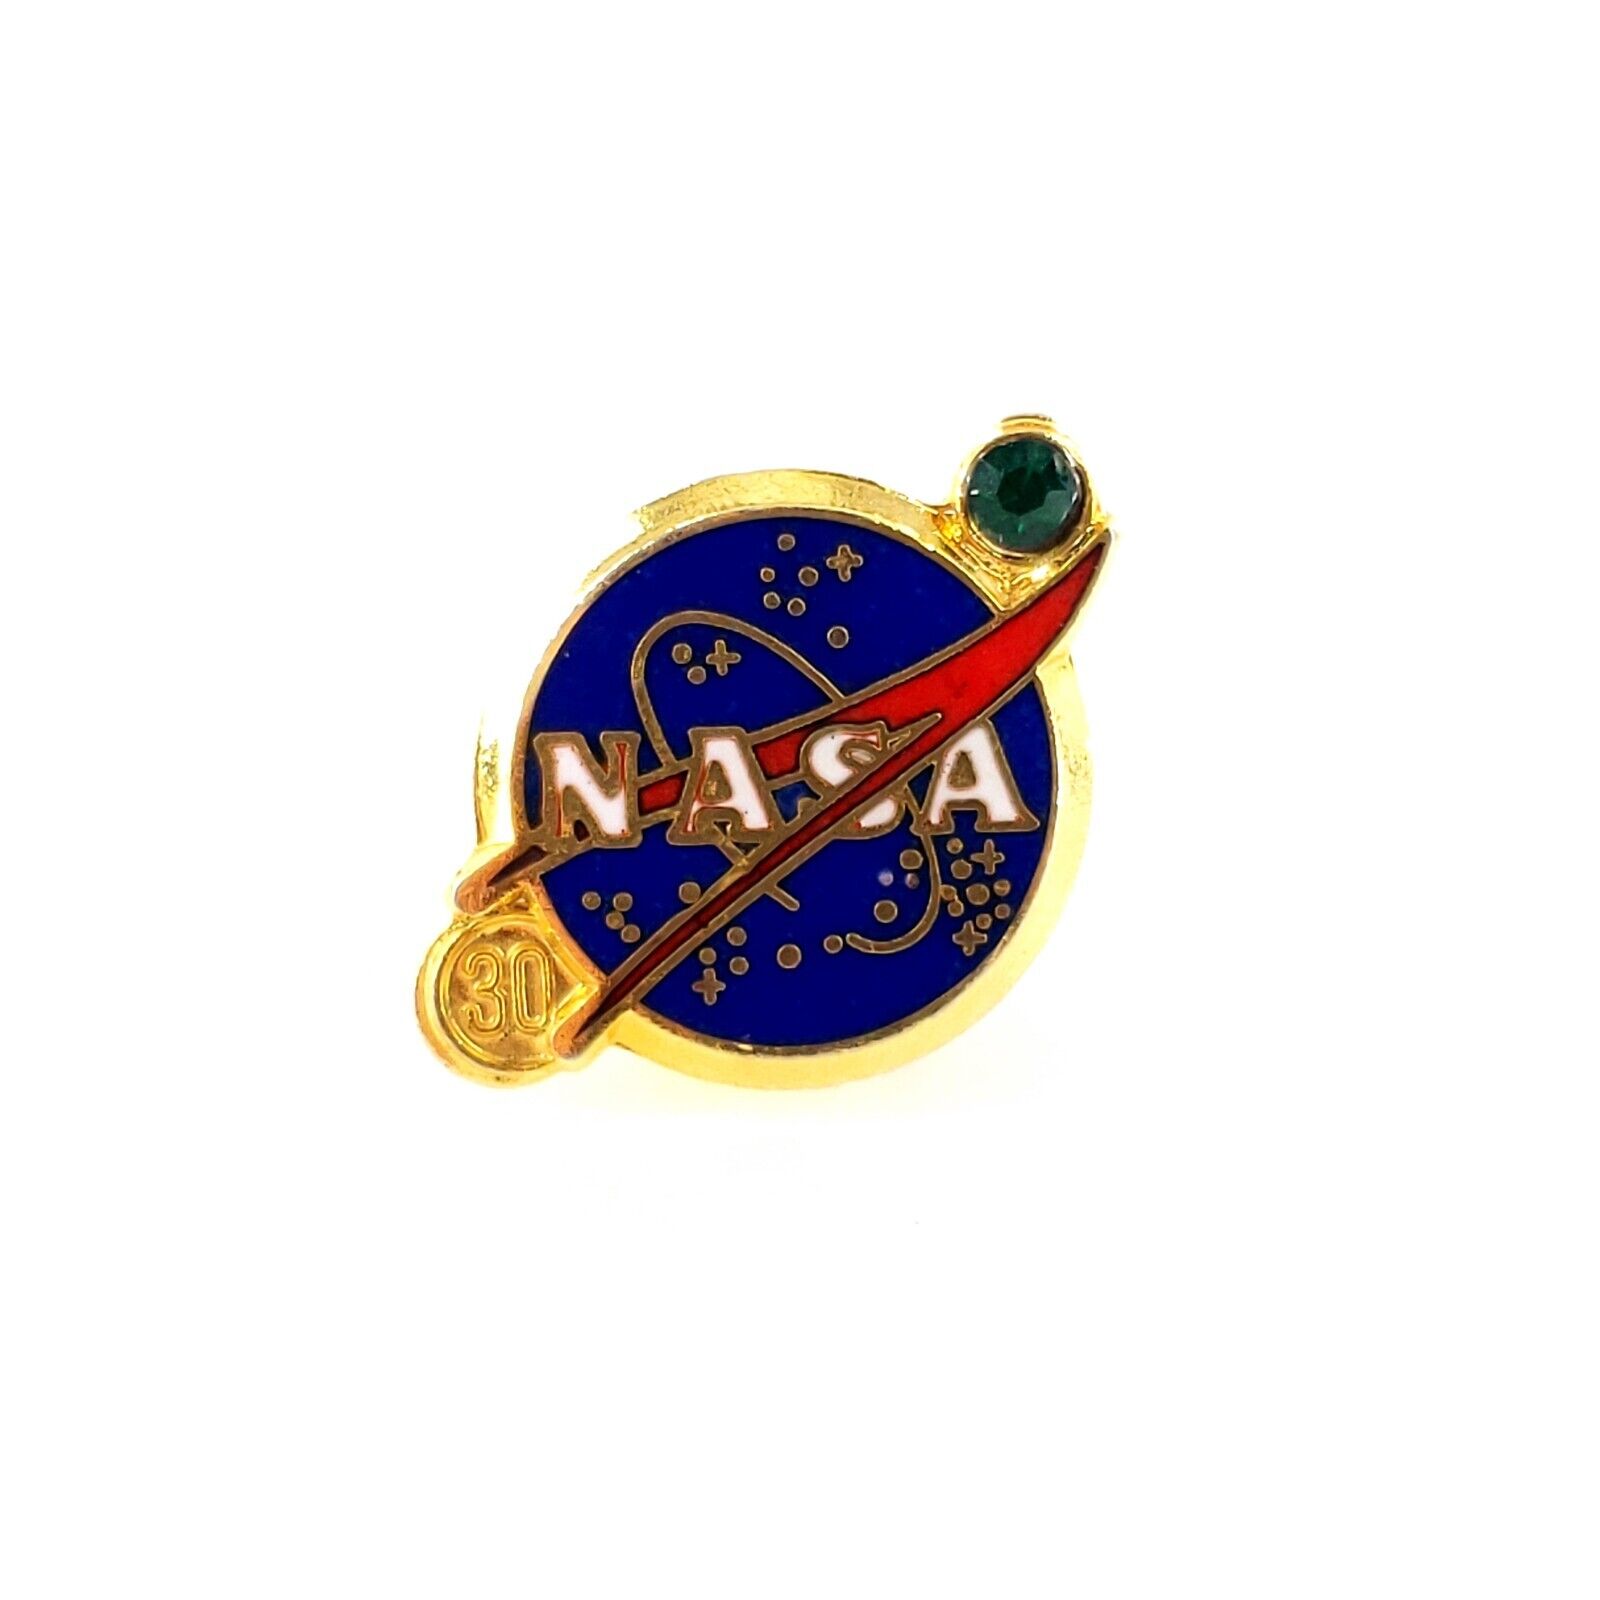 Nasa Employee 30 Year Service Award Lapel Pin Excellent Condition